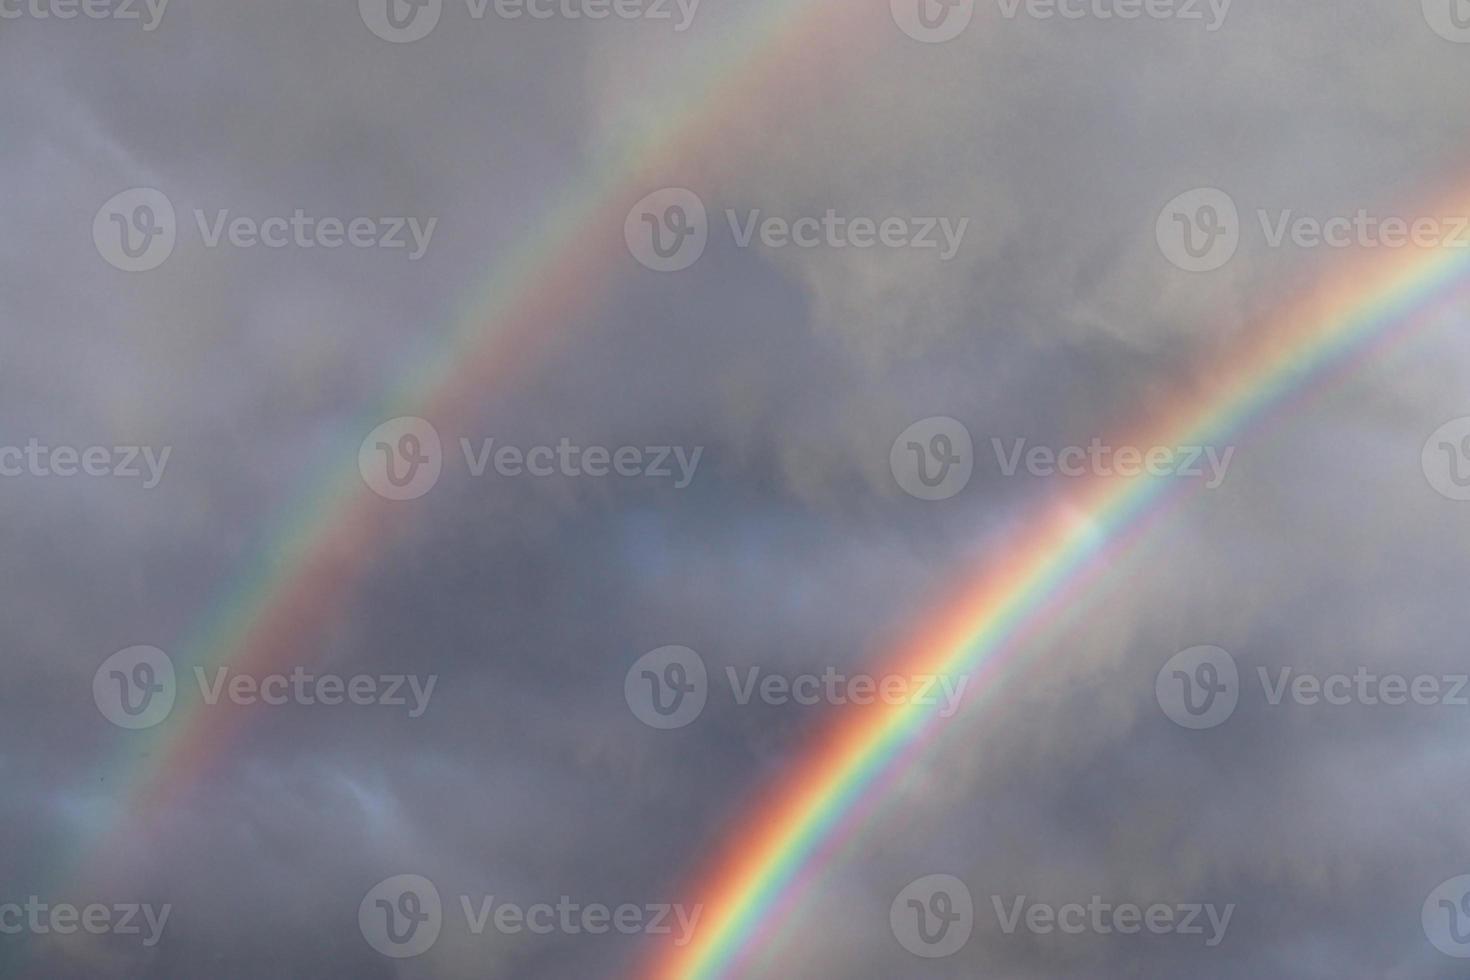 deslumbrantes arco-íris duplos naturais mais arcos supranumerários vistos em um lago no norte da Alemanha foto